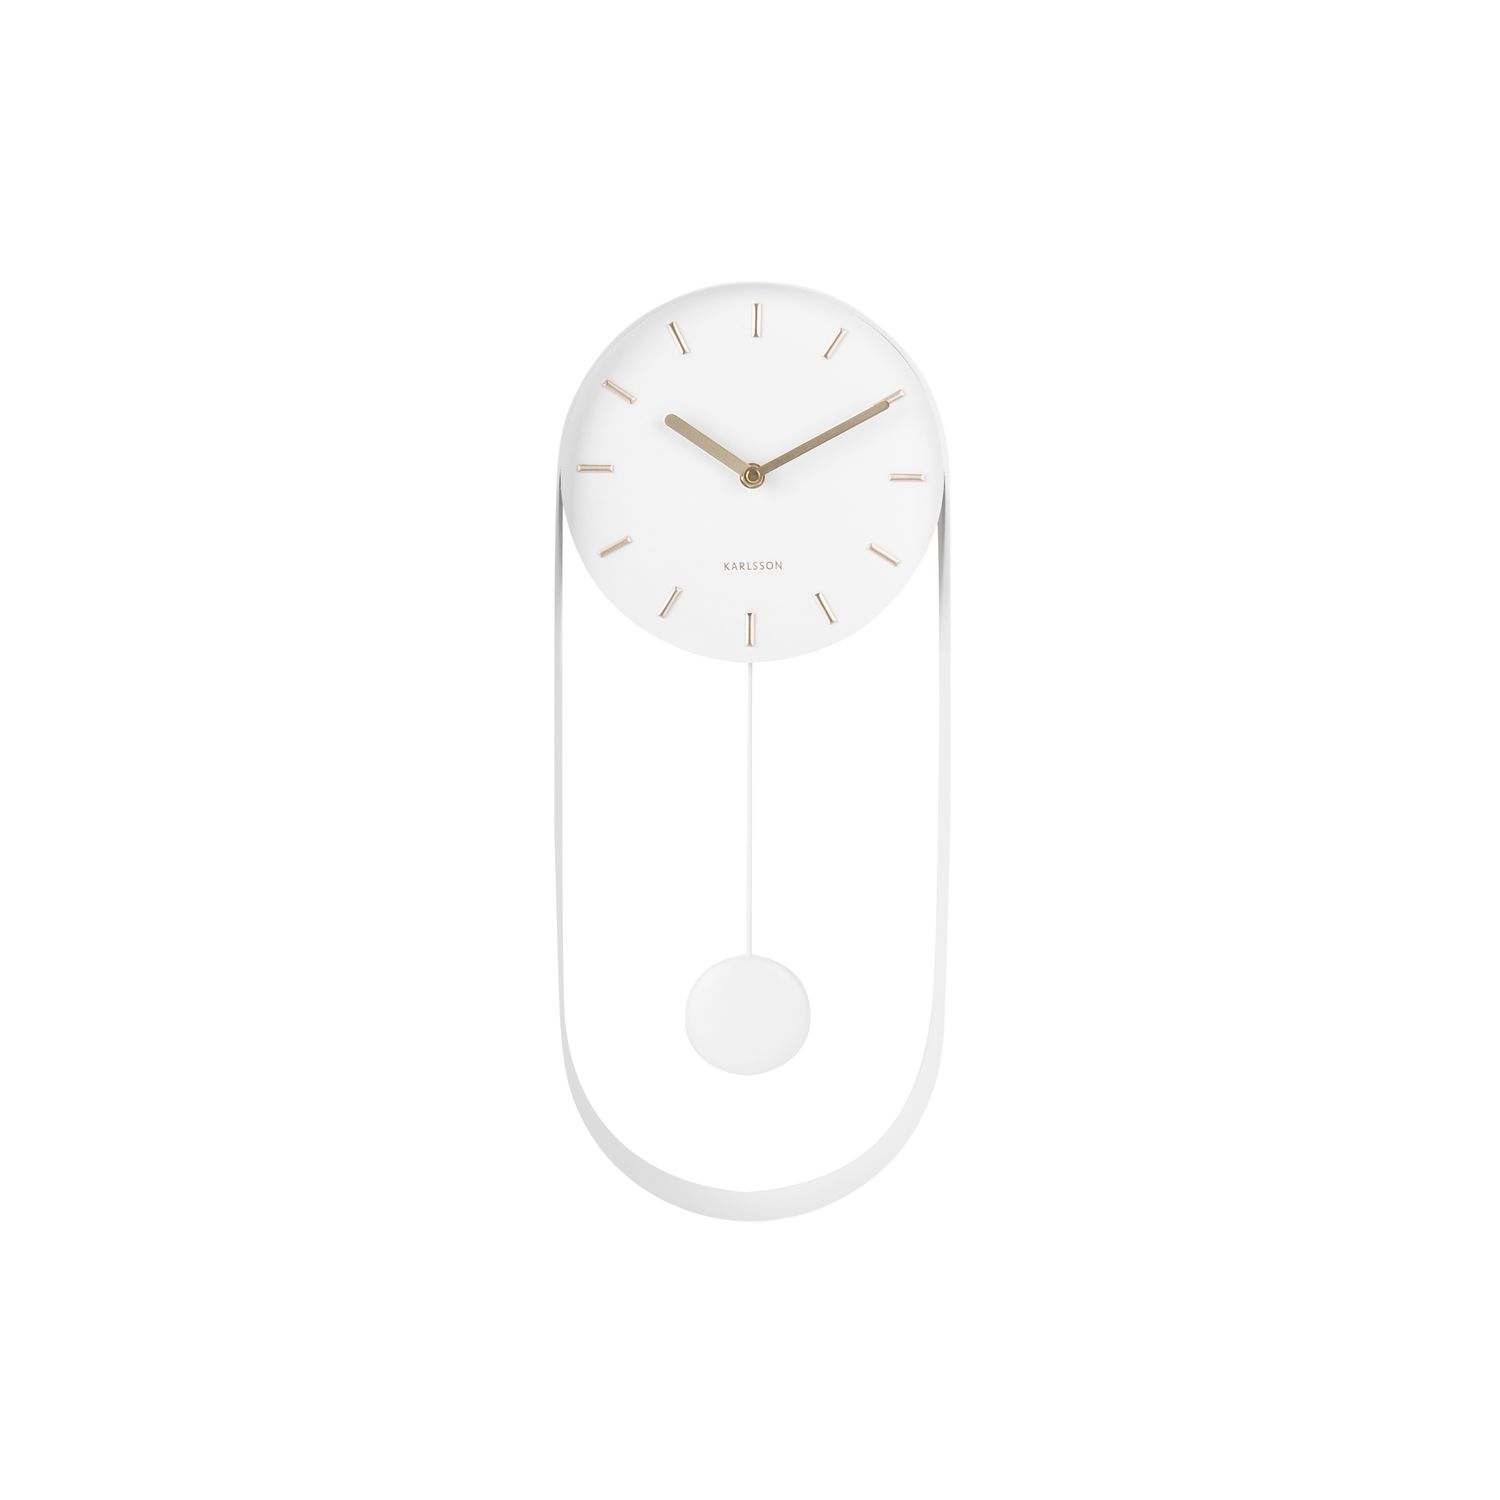 Horloge à balancier design charm - h. 50